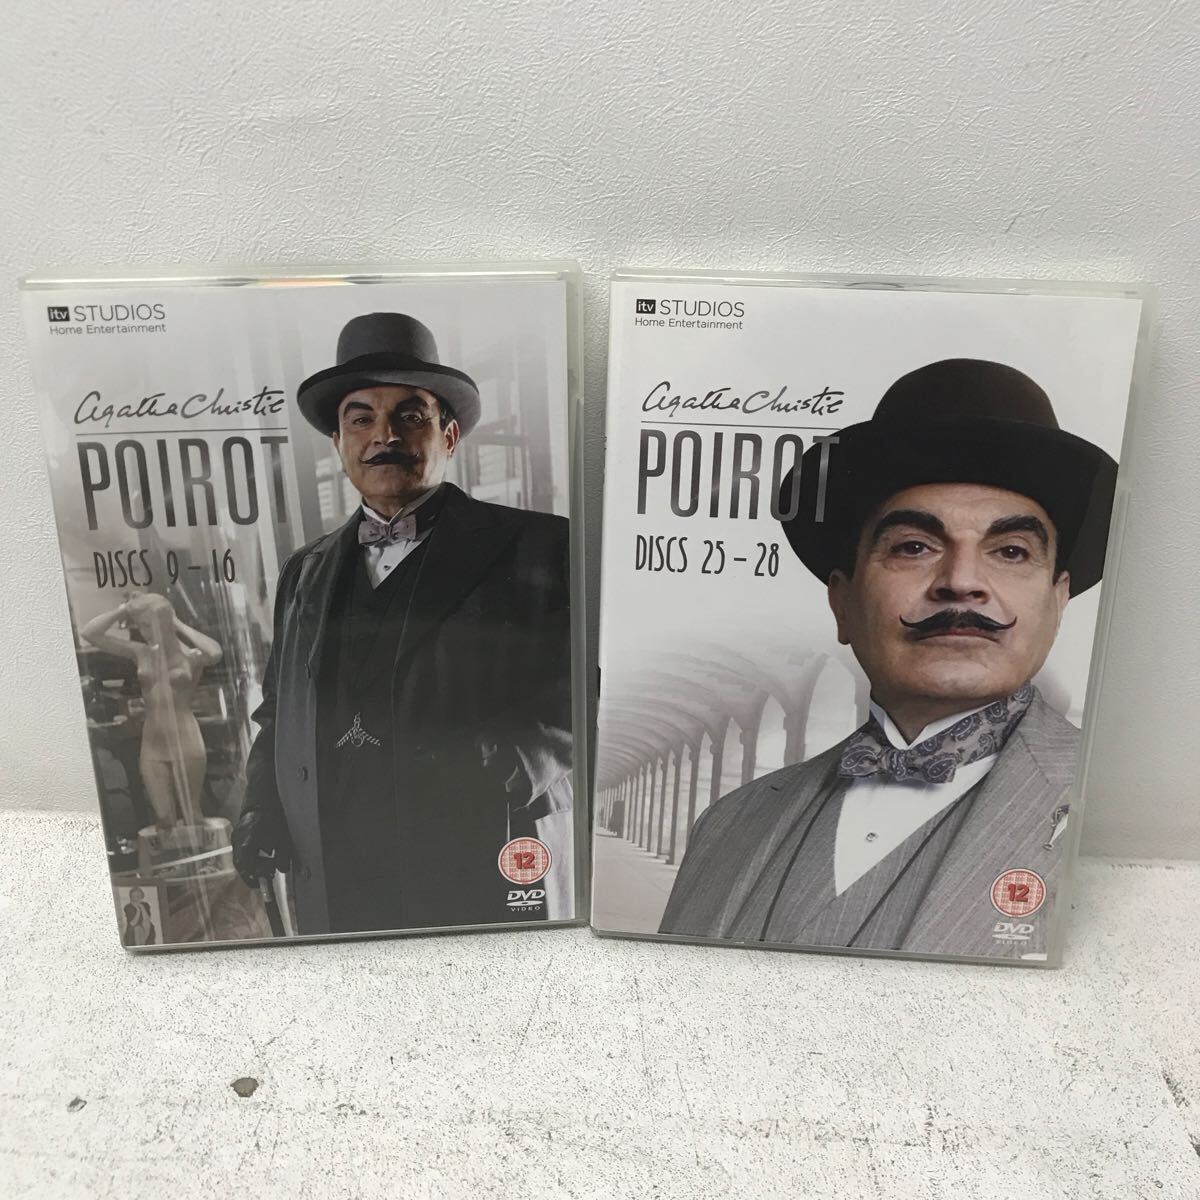 I0322E3 名探偵ポアロ Poirot コンプリートコレクション DVDBOX 61エピソード 輸入盤 国内再生不可 海外ドラマ THE COMPLETE COLLECTION_画像8